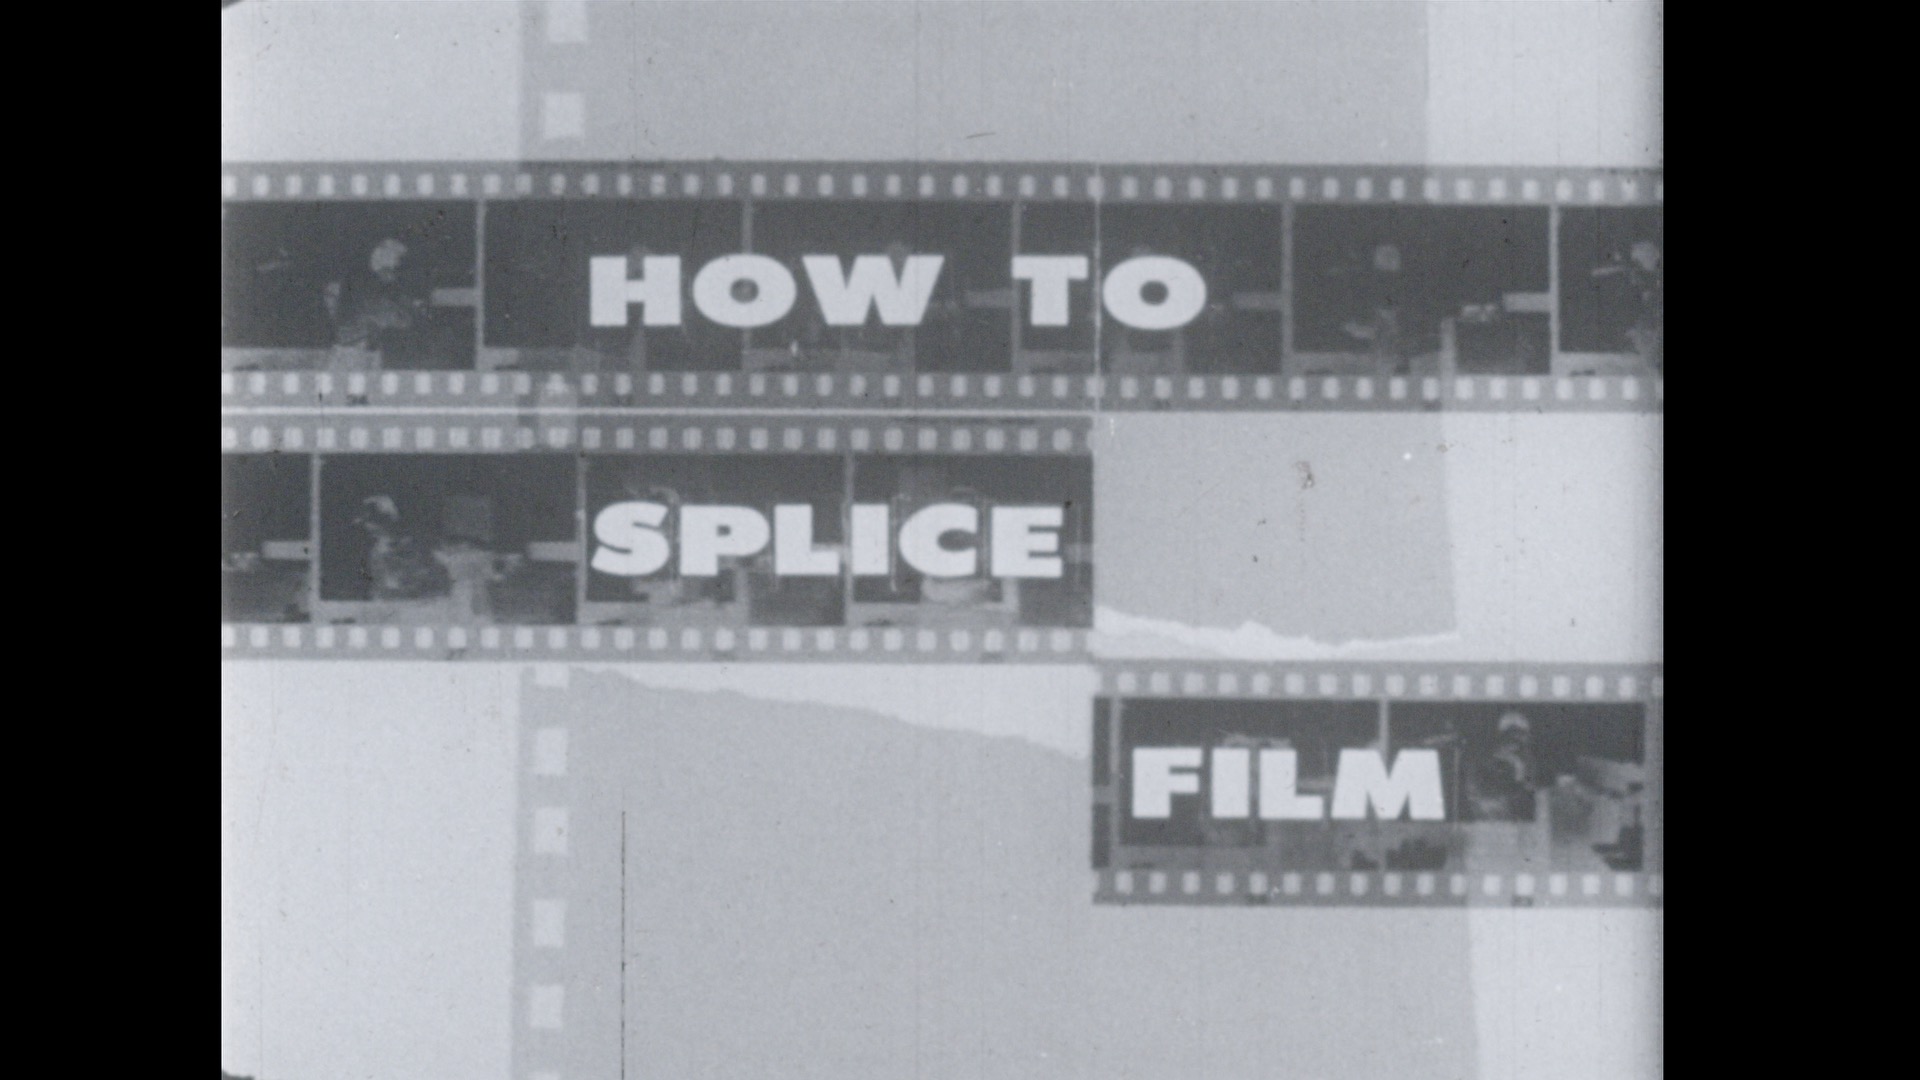 How to Splice Film, 1959